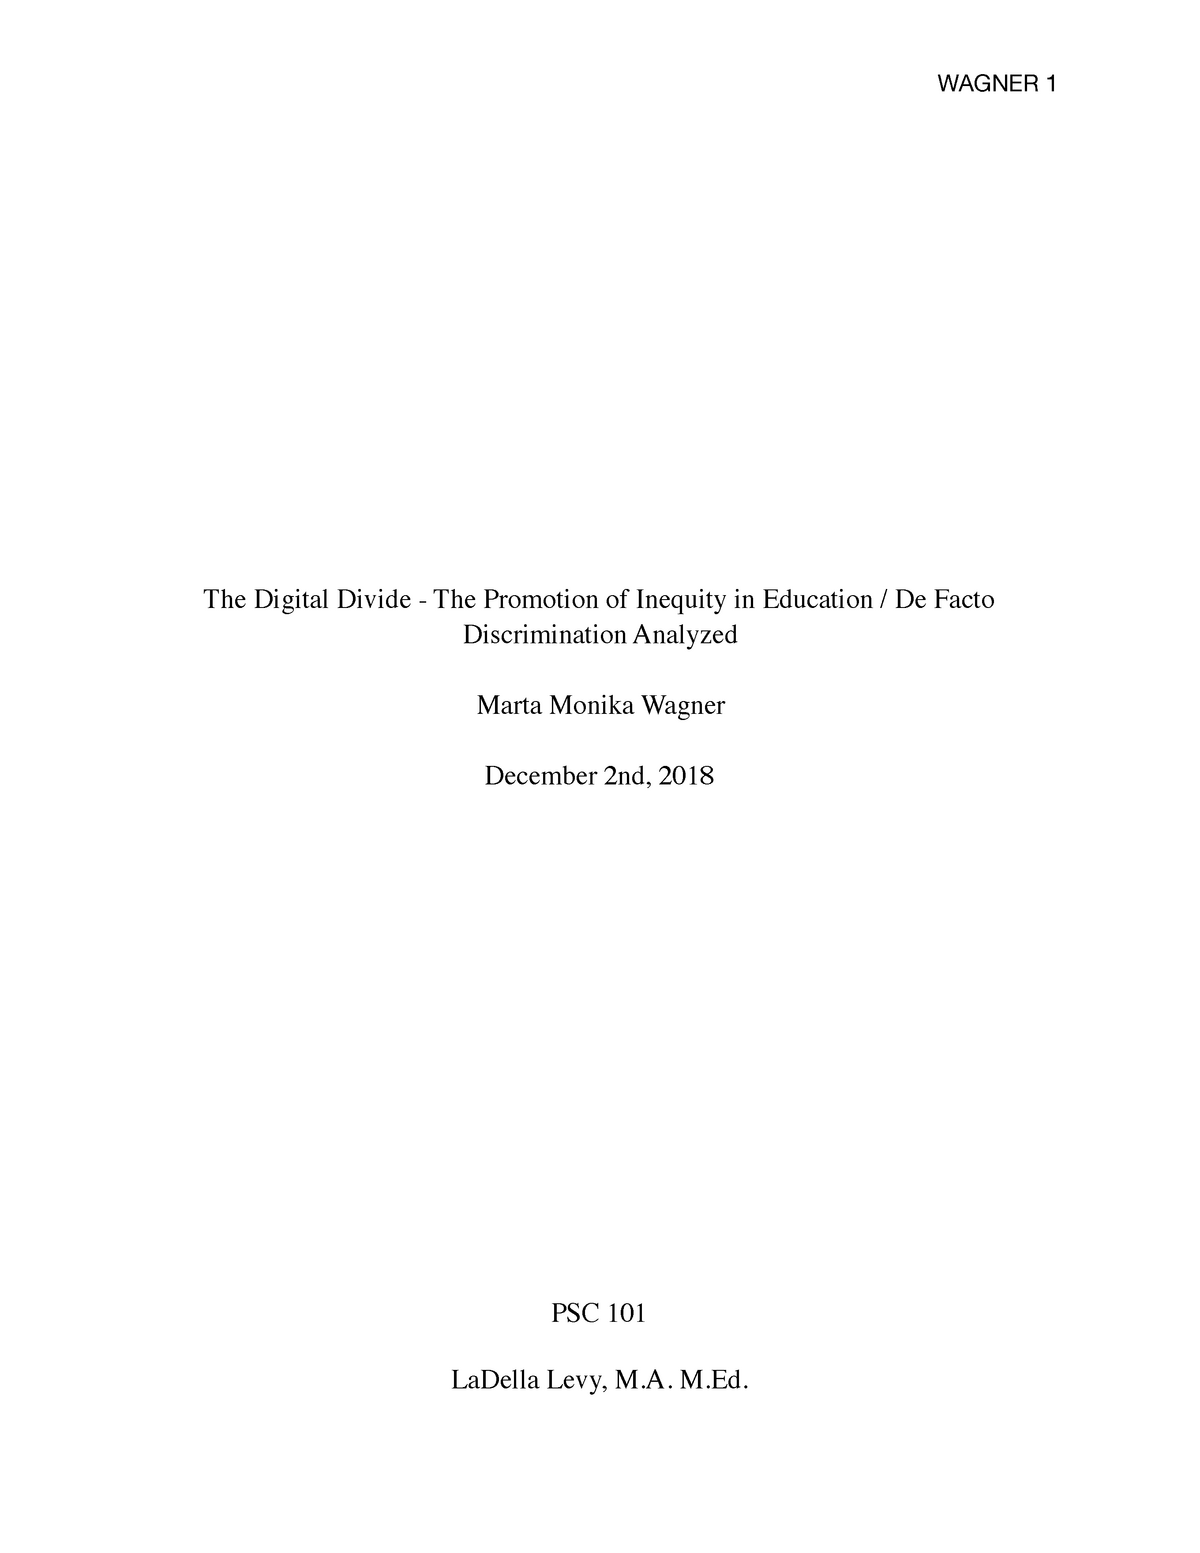 digital divide essay introduction